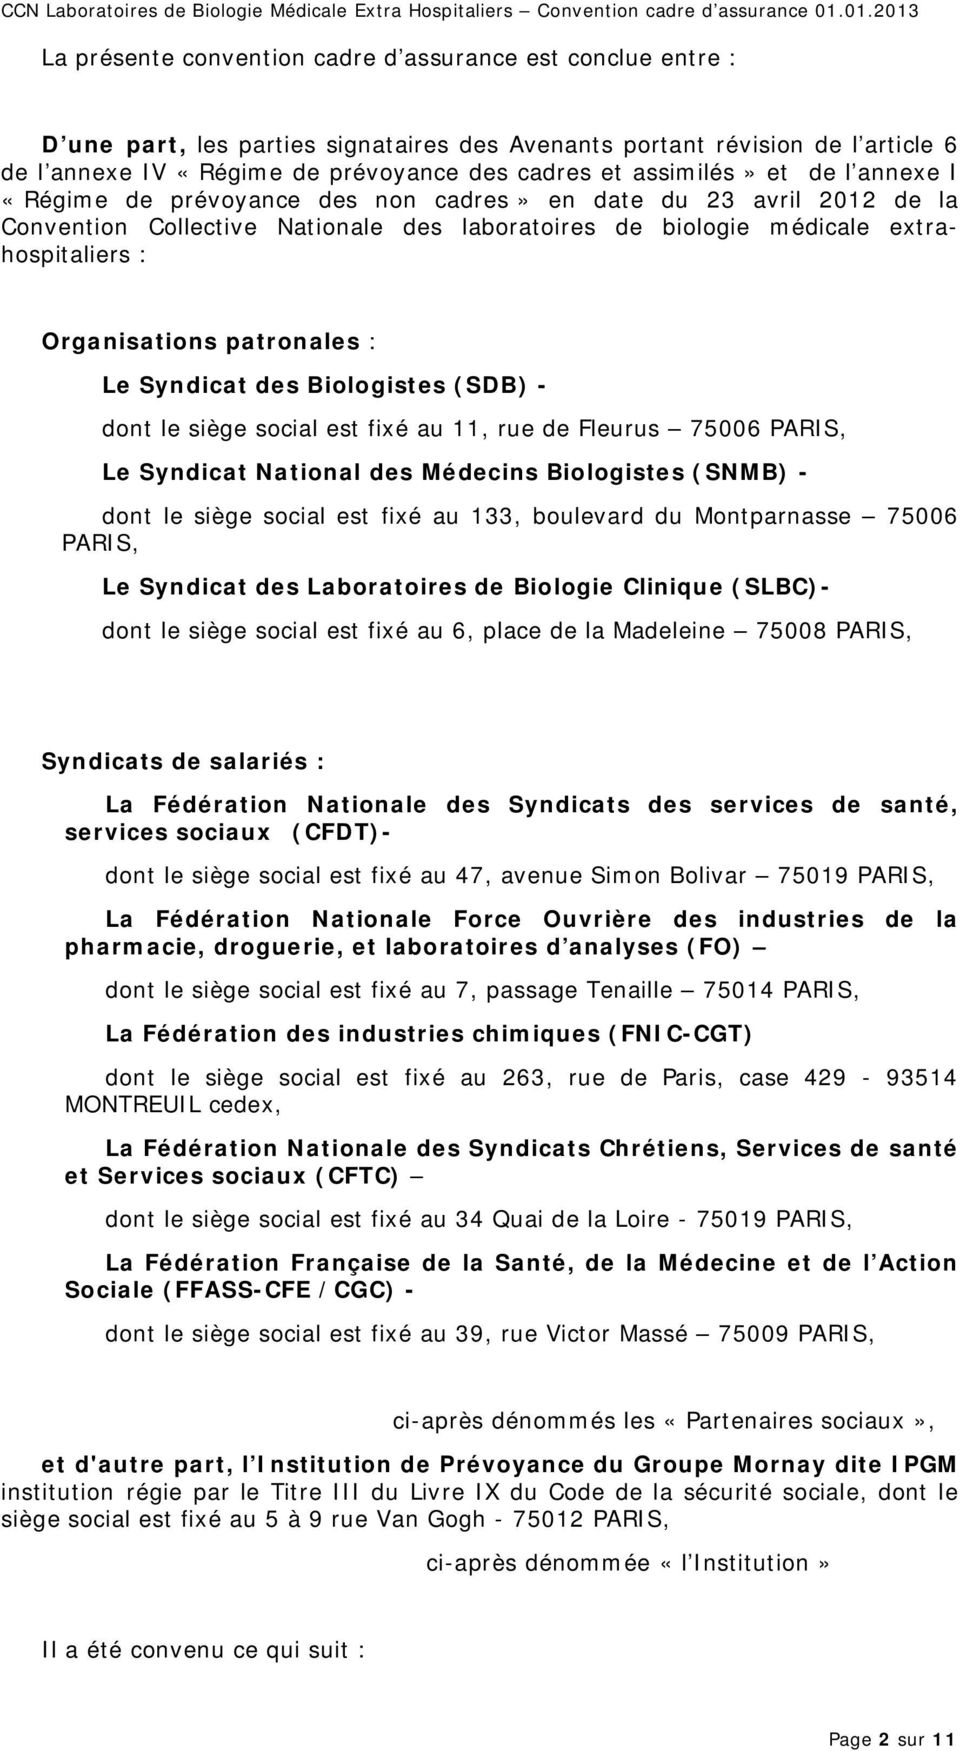 Organisations patronales : Le Syndicat des Biologistes (SDB) - dont le siège social est fixé au 11, rue de Fleurus 75006 PARIS, Le Syndicat National des Médecins Biologistes (SNMB) - dont le siège